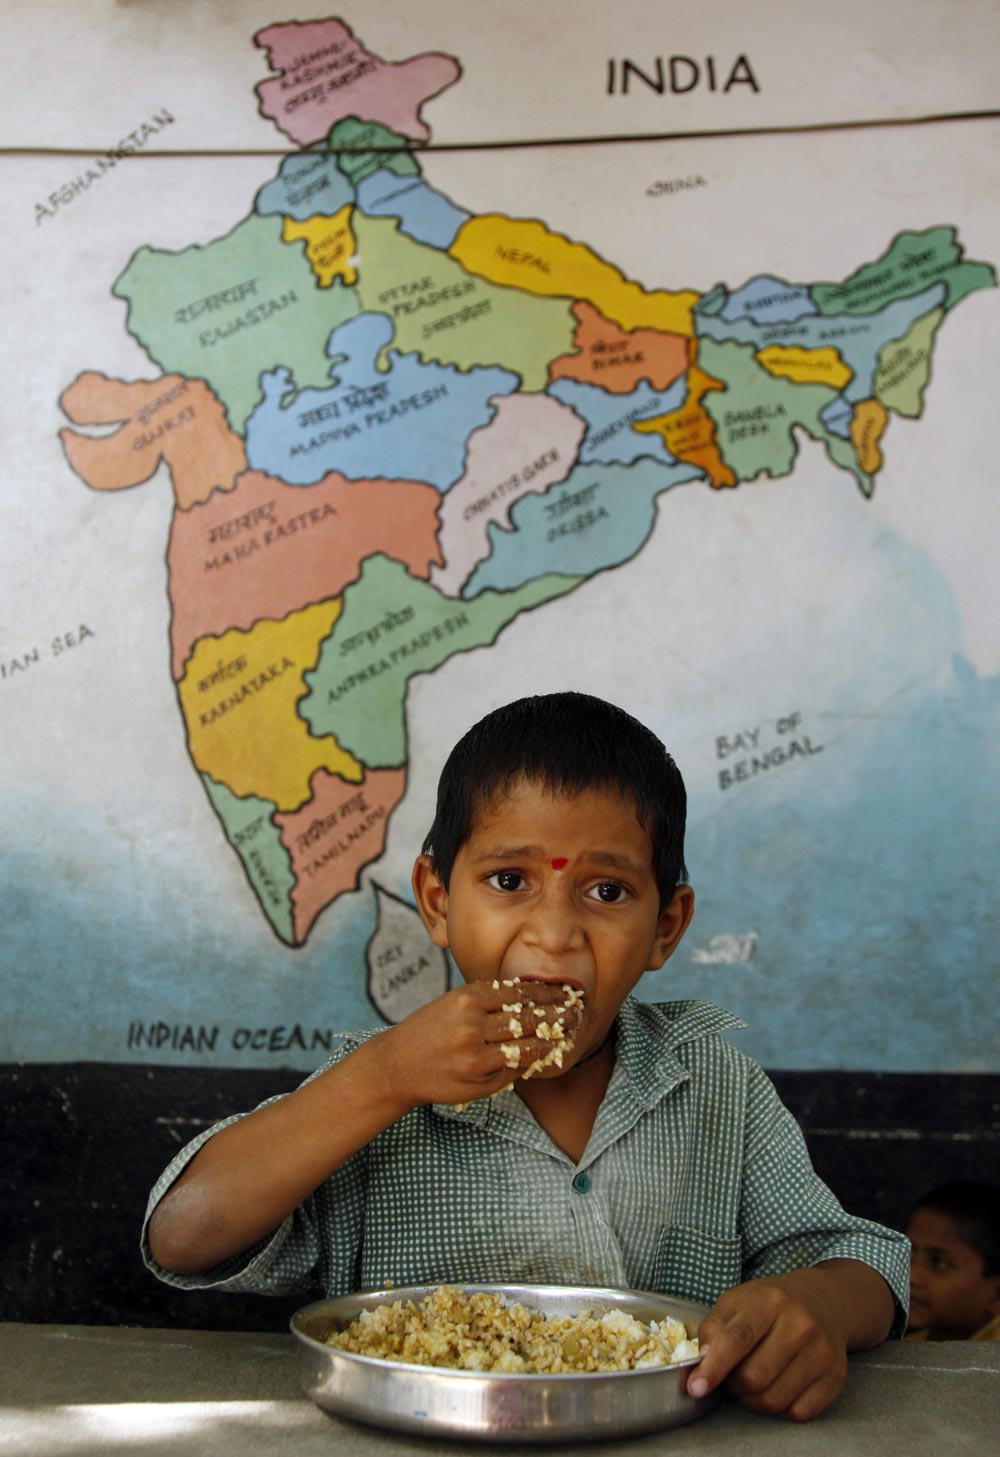 हैदराबाद के एक सरकारी स्‍कूल में मध्‍याहन भोजन को ग्रहण करता हुए एक नन्‍हा छात्र।